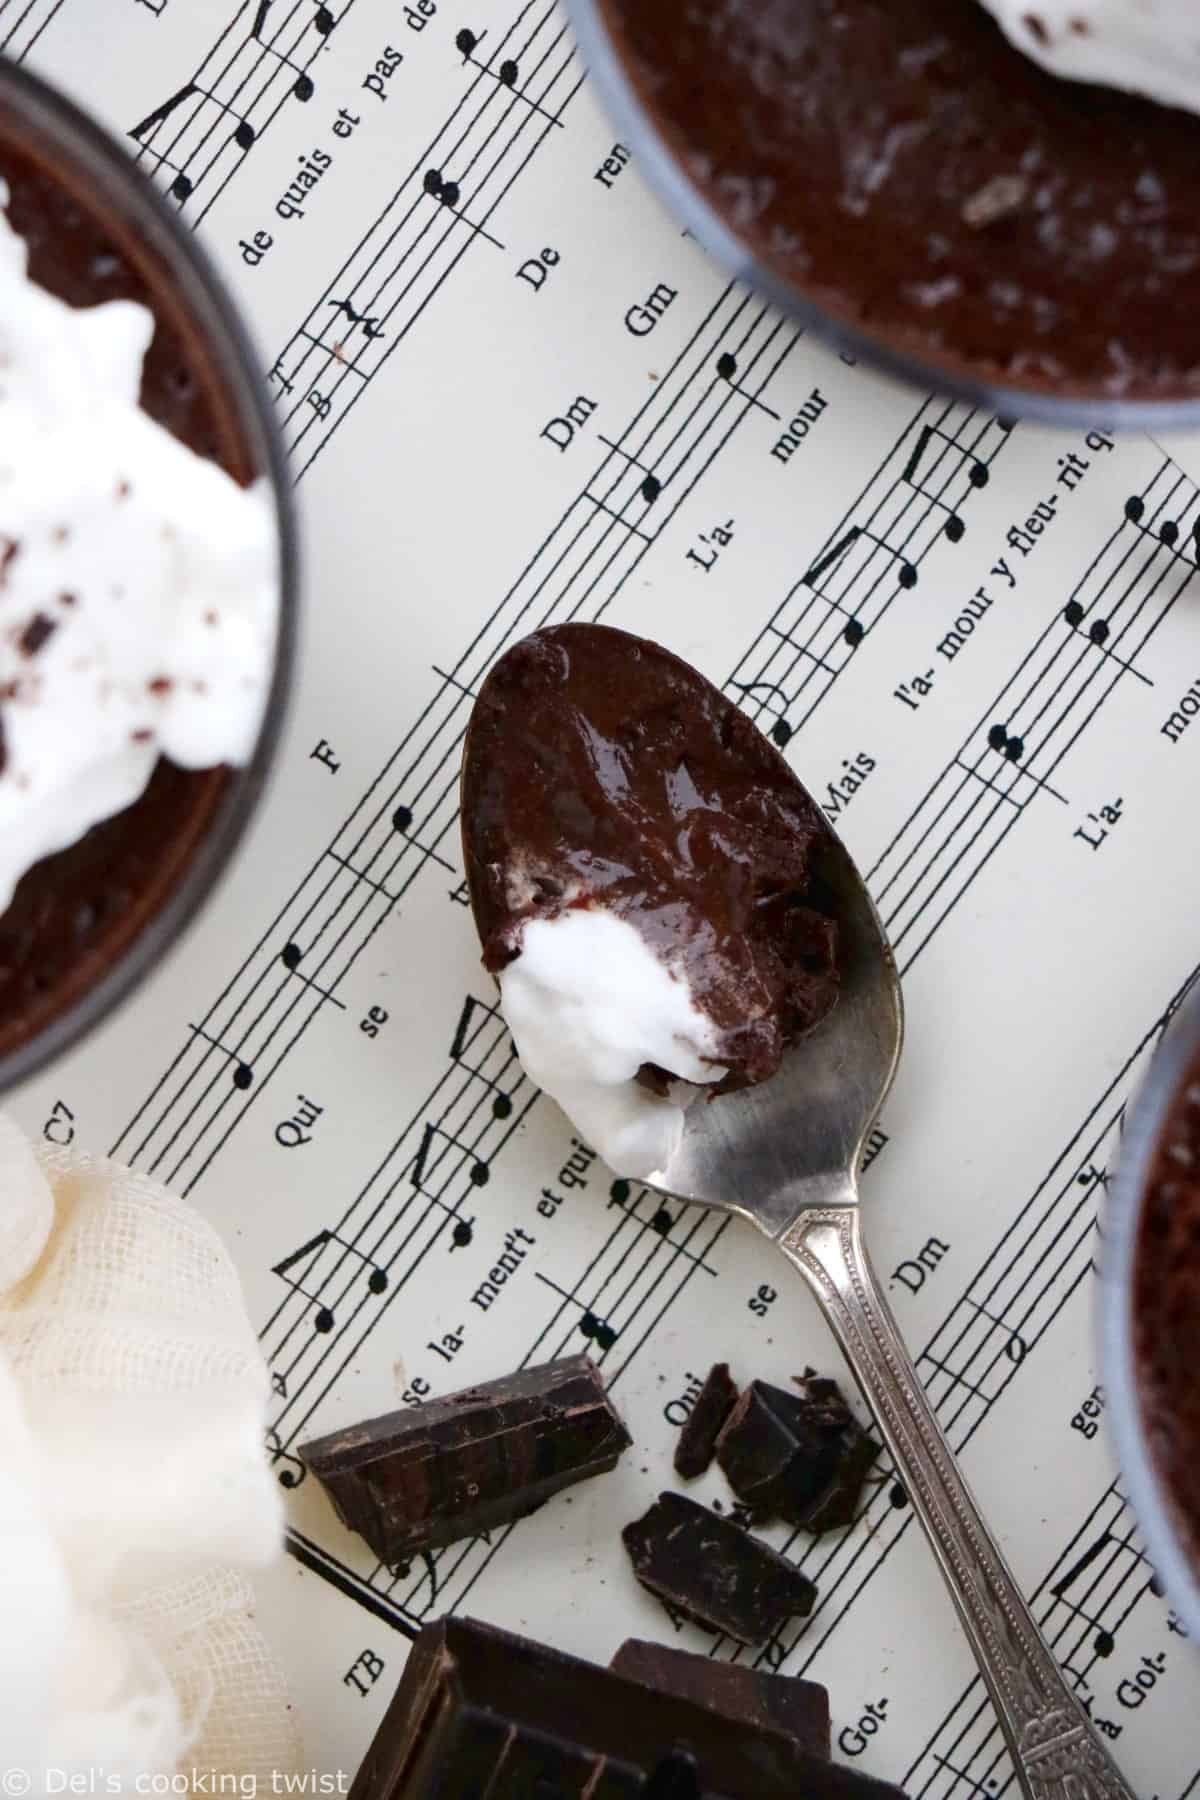 Les petits pots de crème au chocolat à l'ancienne, c'est un dessert de grand-mère très gourmand qui vous replongera en enfance.